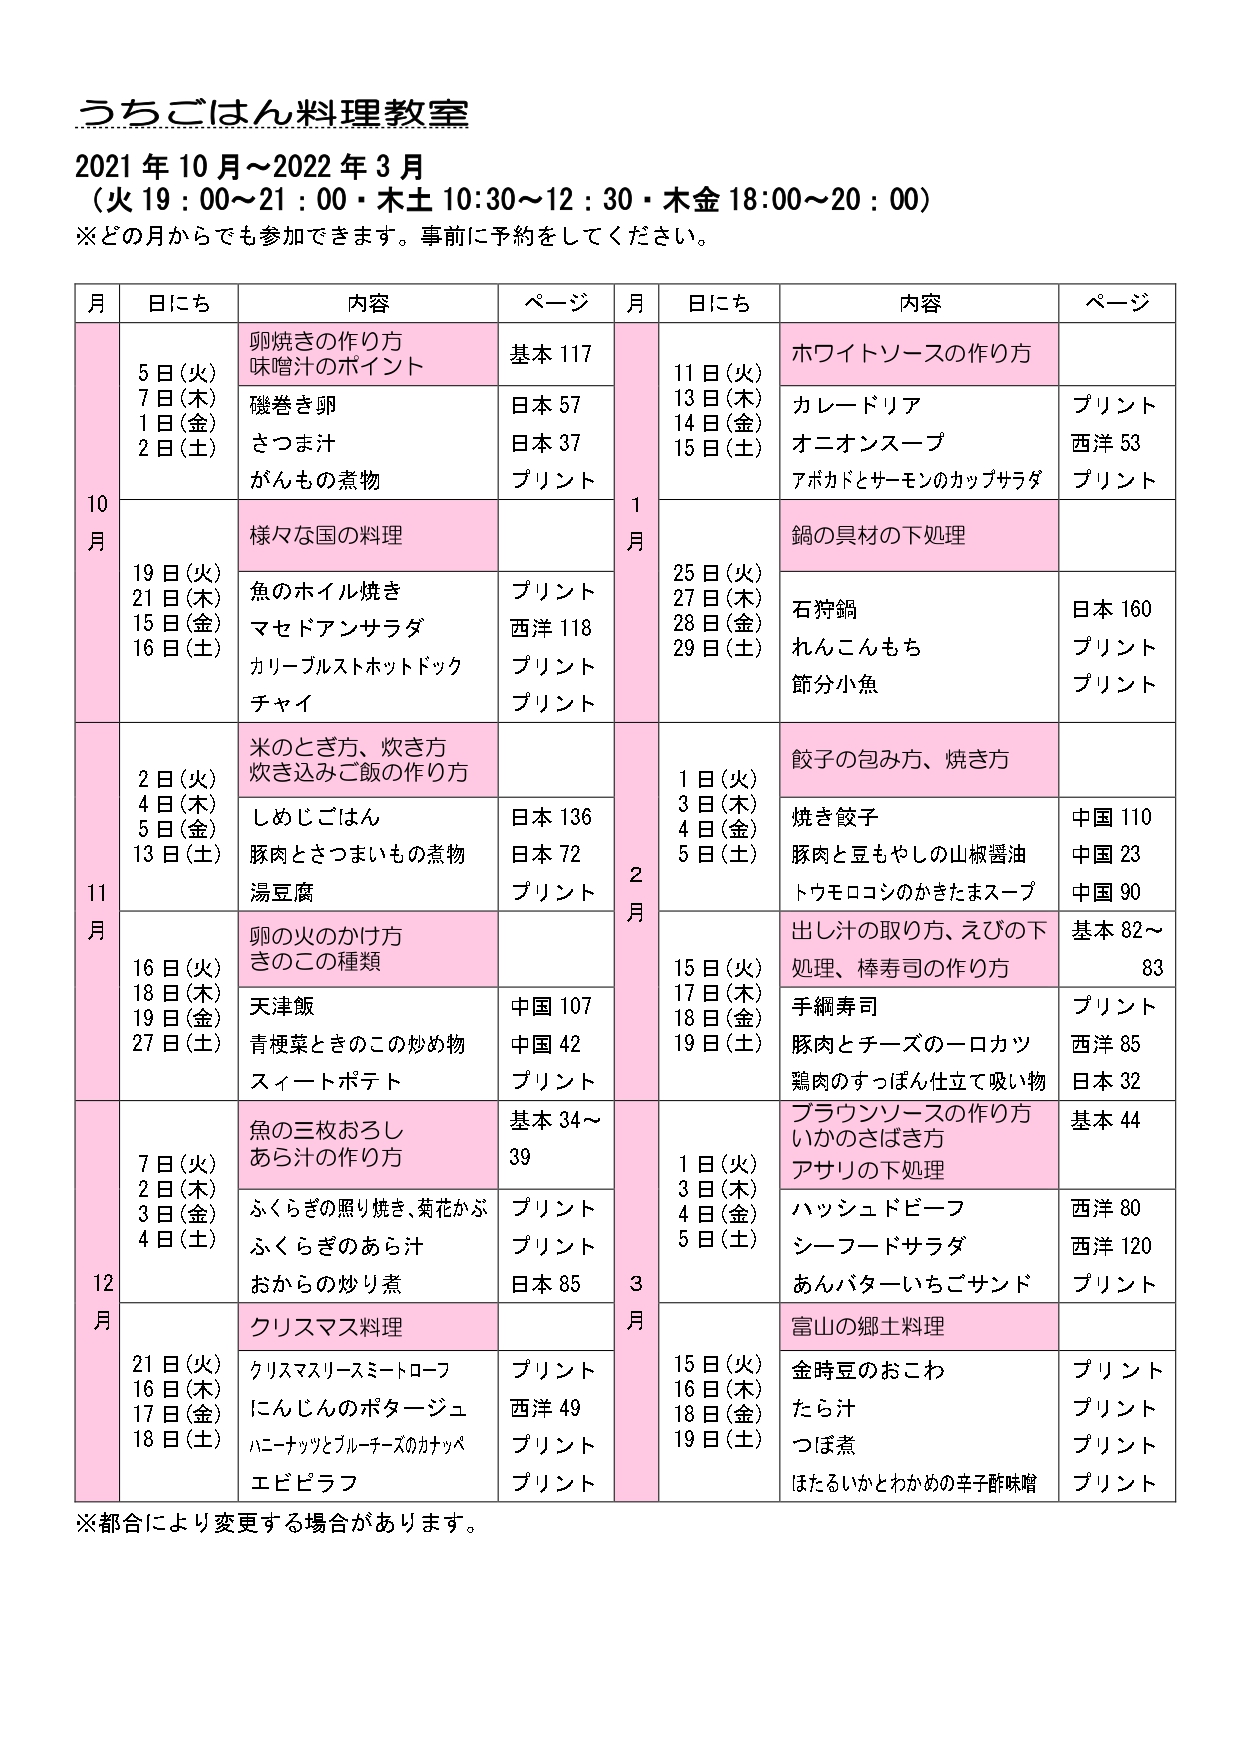 2021.10～3うちごはん料理教室カリキュラム_page-0001 (1)